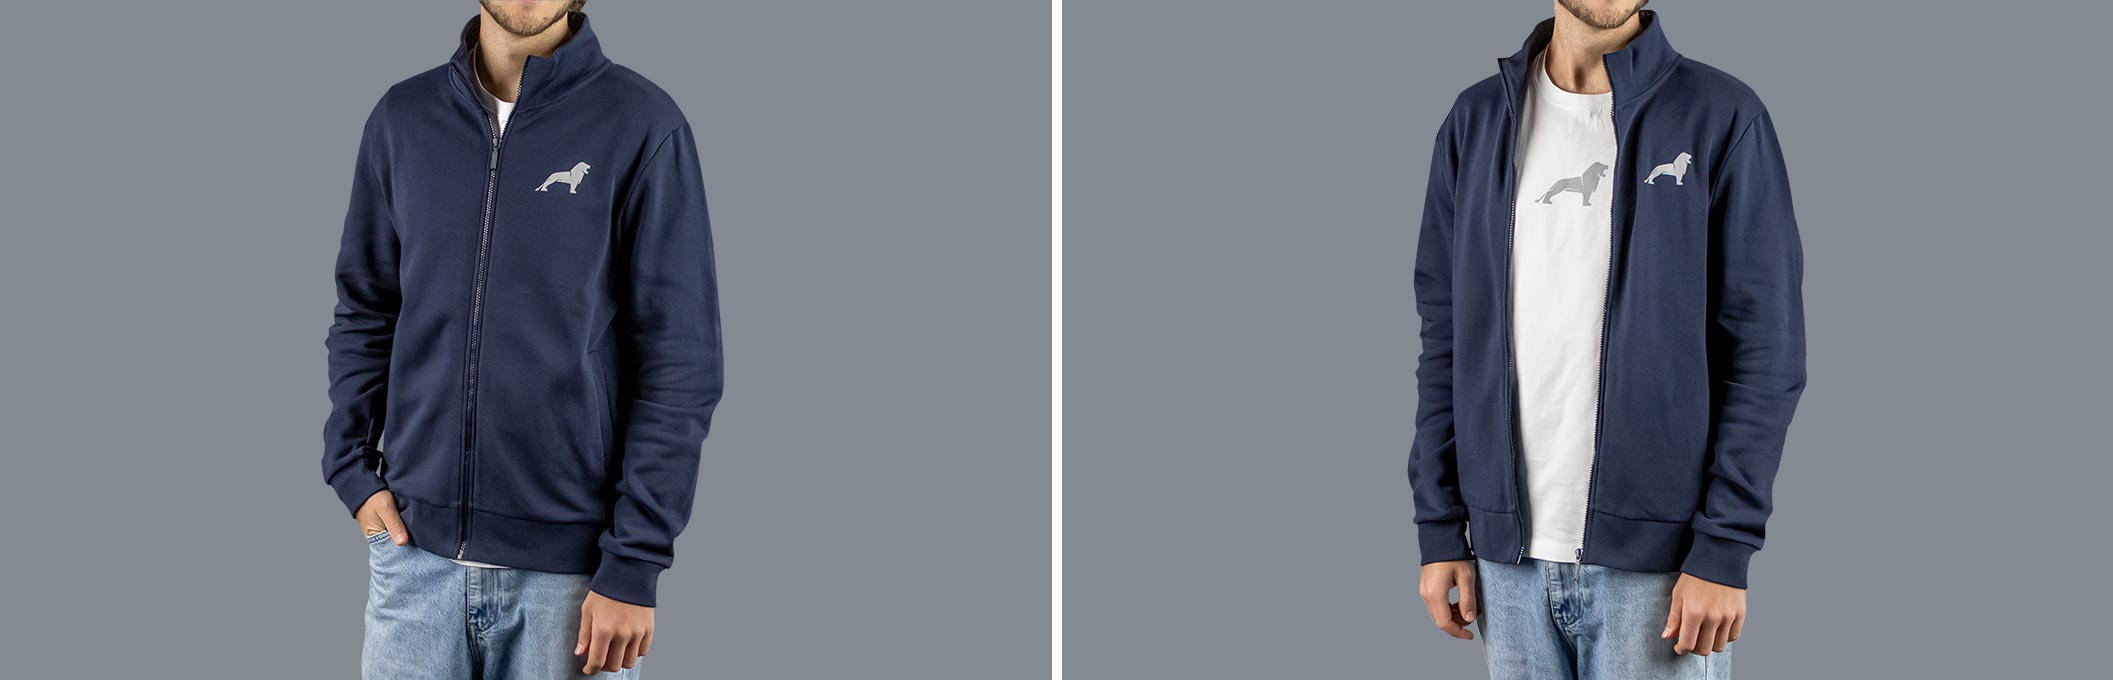 Vorder- und Rückansicht einer blauen MAN Sweatjacke aus der Essential Kollektion mit Logo Print auf der Vorderseite und dem Wort "MAN" auf der Rückseite